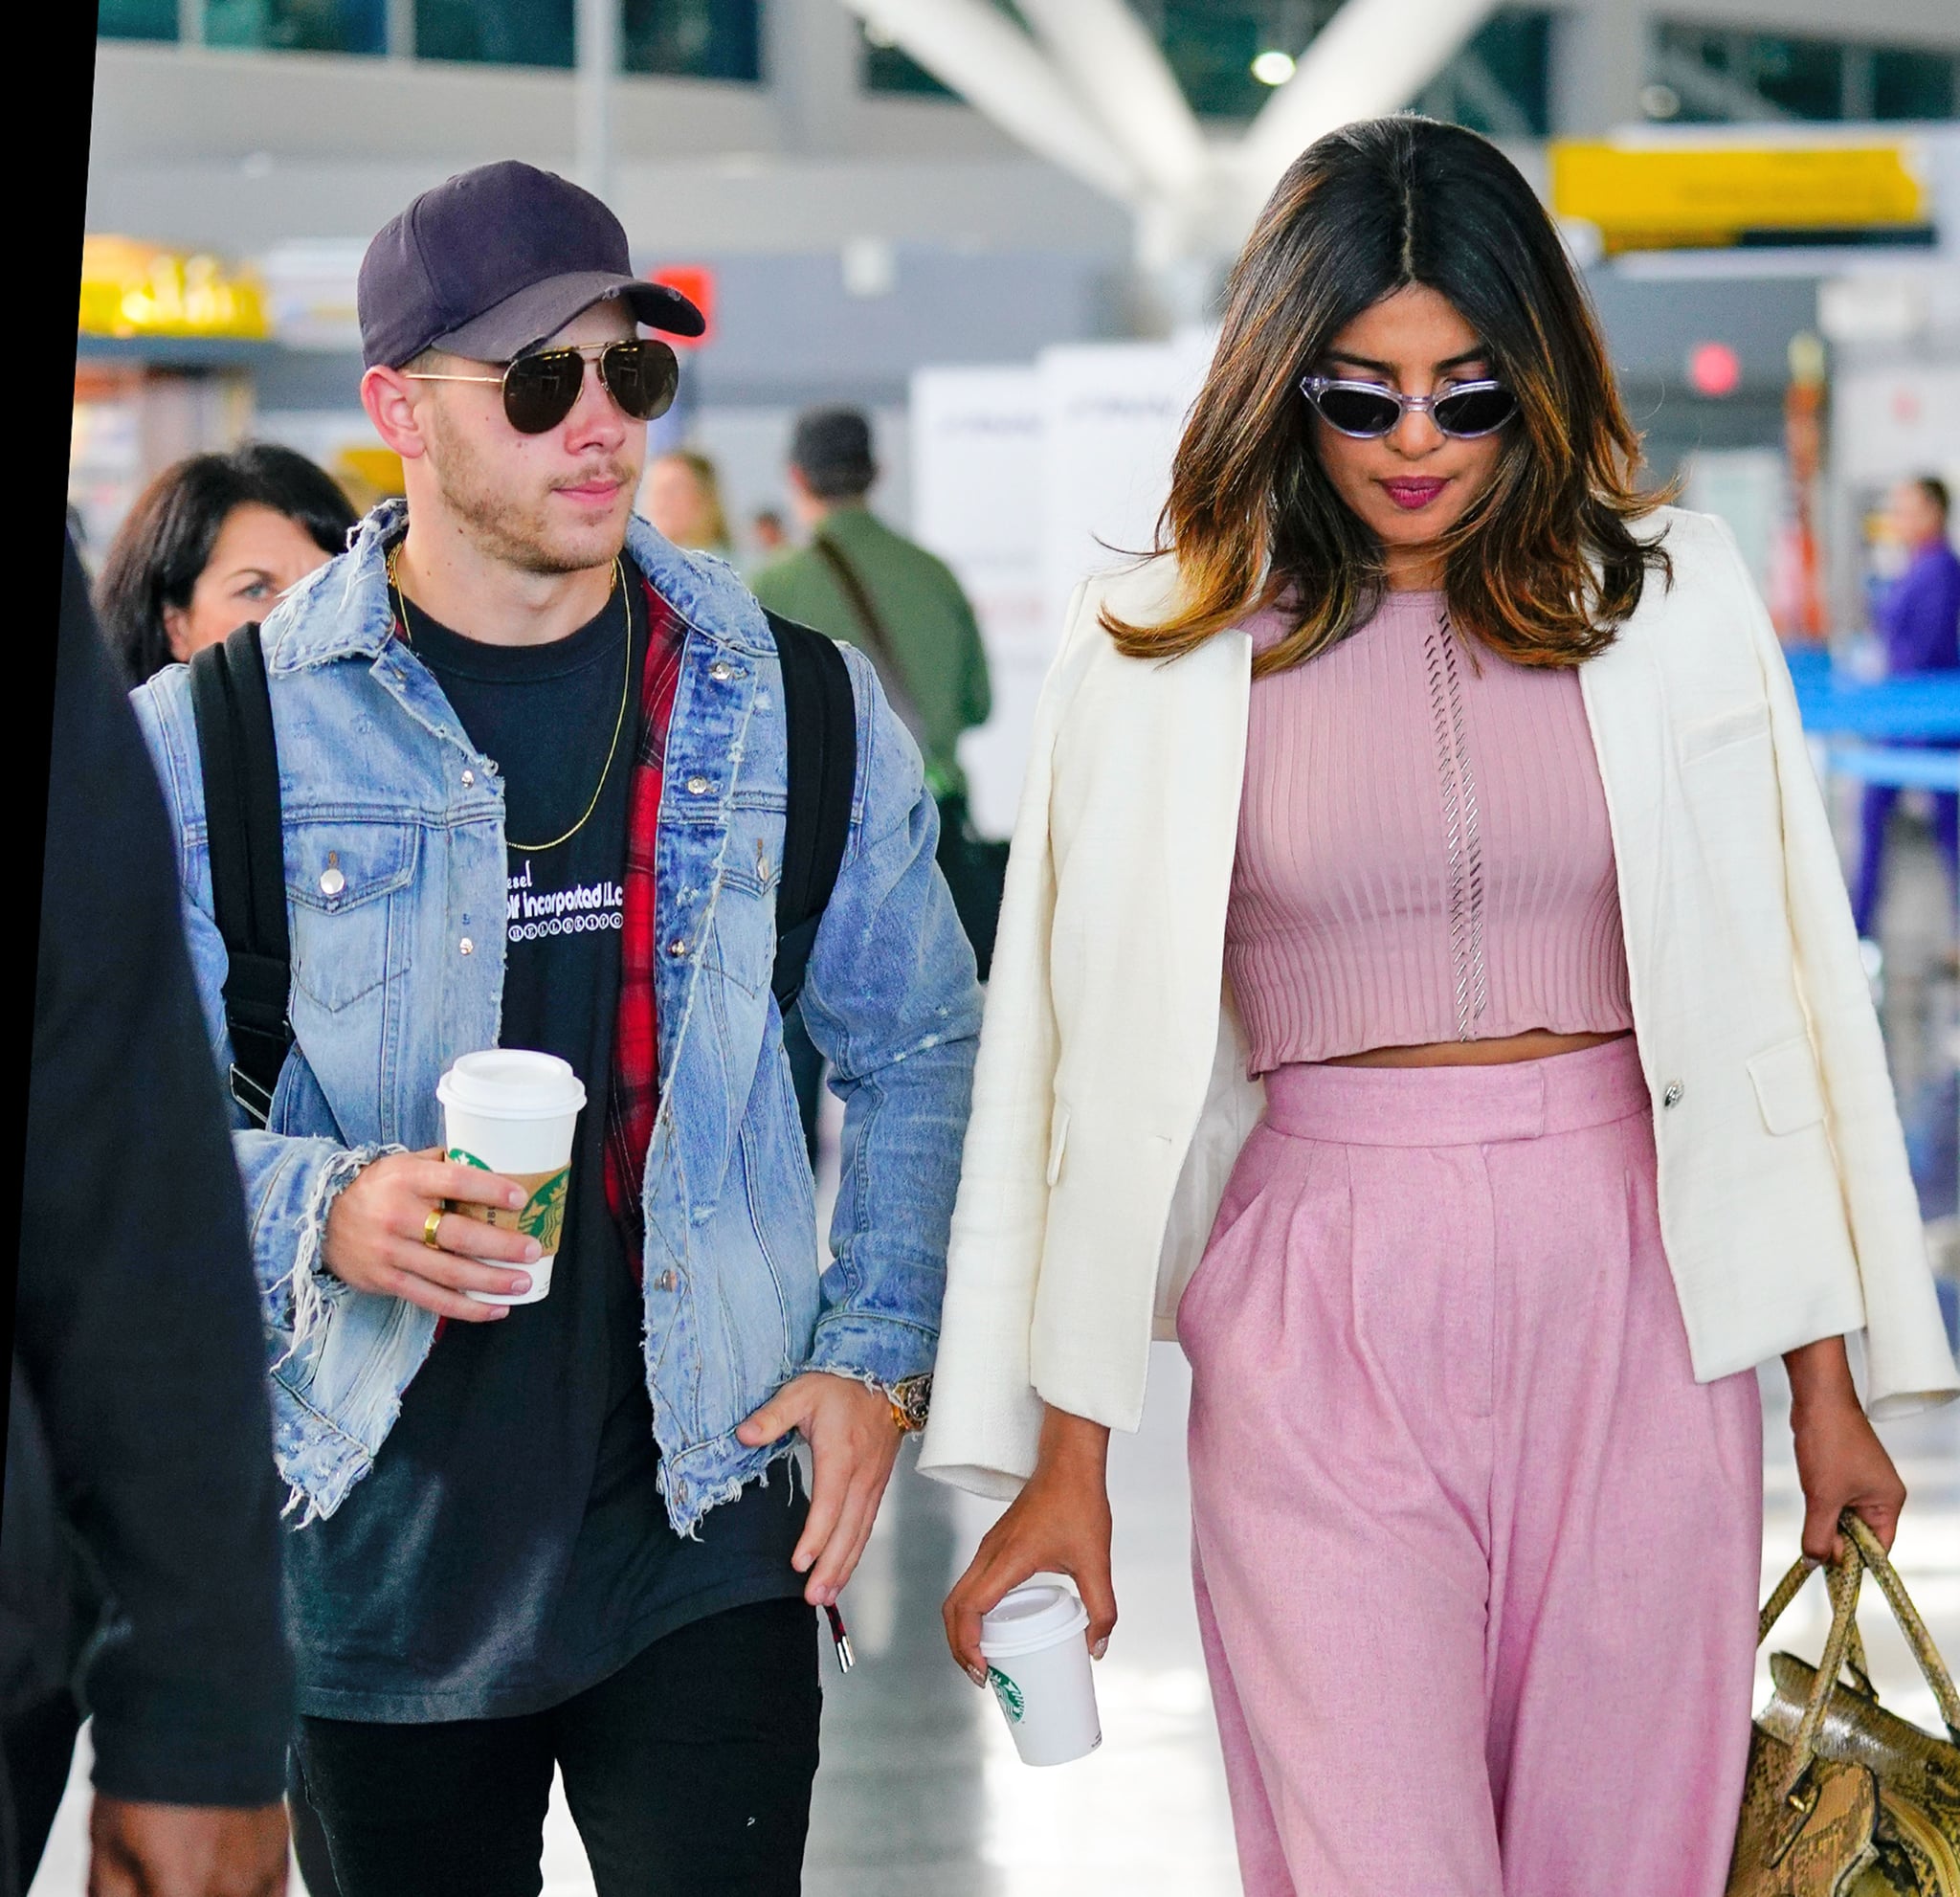 NEW YORK, NY - JUNE 08:  Nick Jonas and Priyanka Chopra at JFK airport on June 8, 2018 in New York City.  (Photo by Gotham/GC Images)